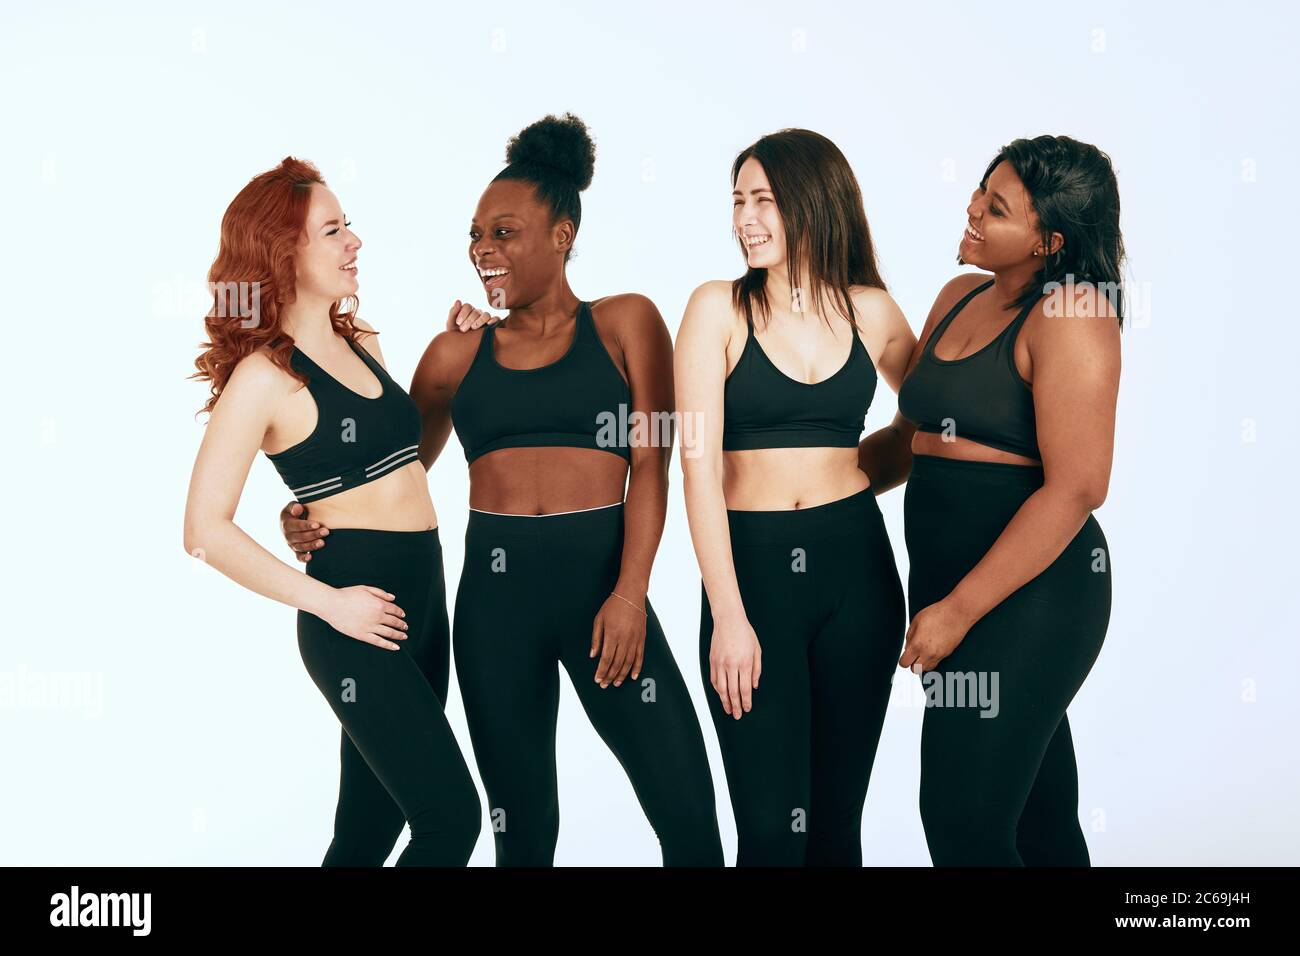 de cuatro mujeres de diferentes razas, tipos y tamaños en el traje deportivo hablando animado y riendo sobre fondo Fotografía de stock -